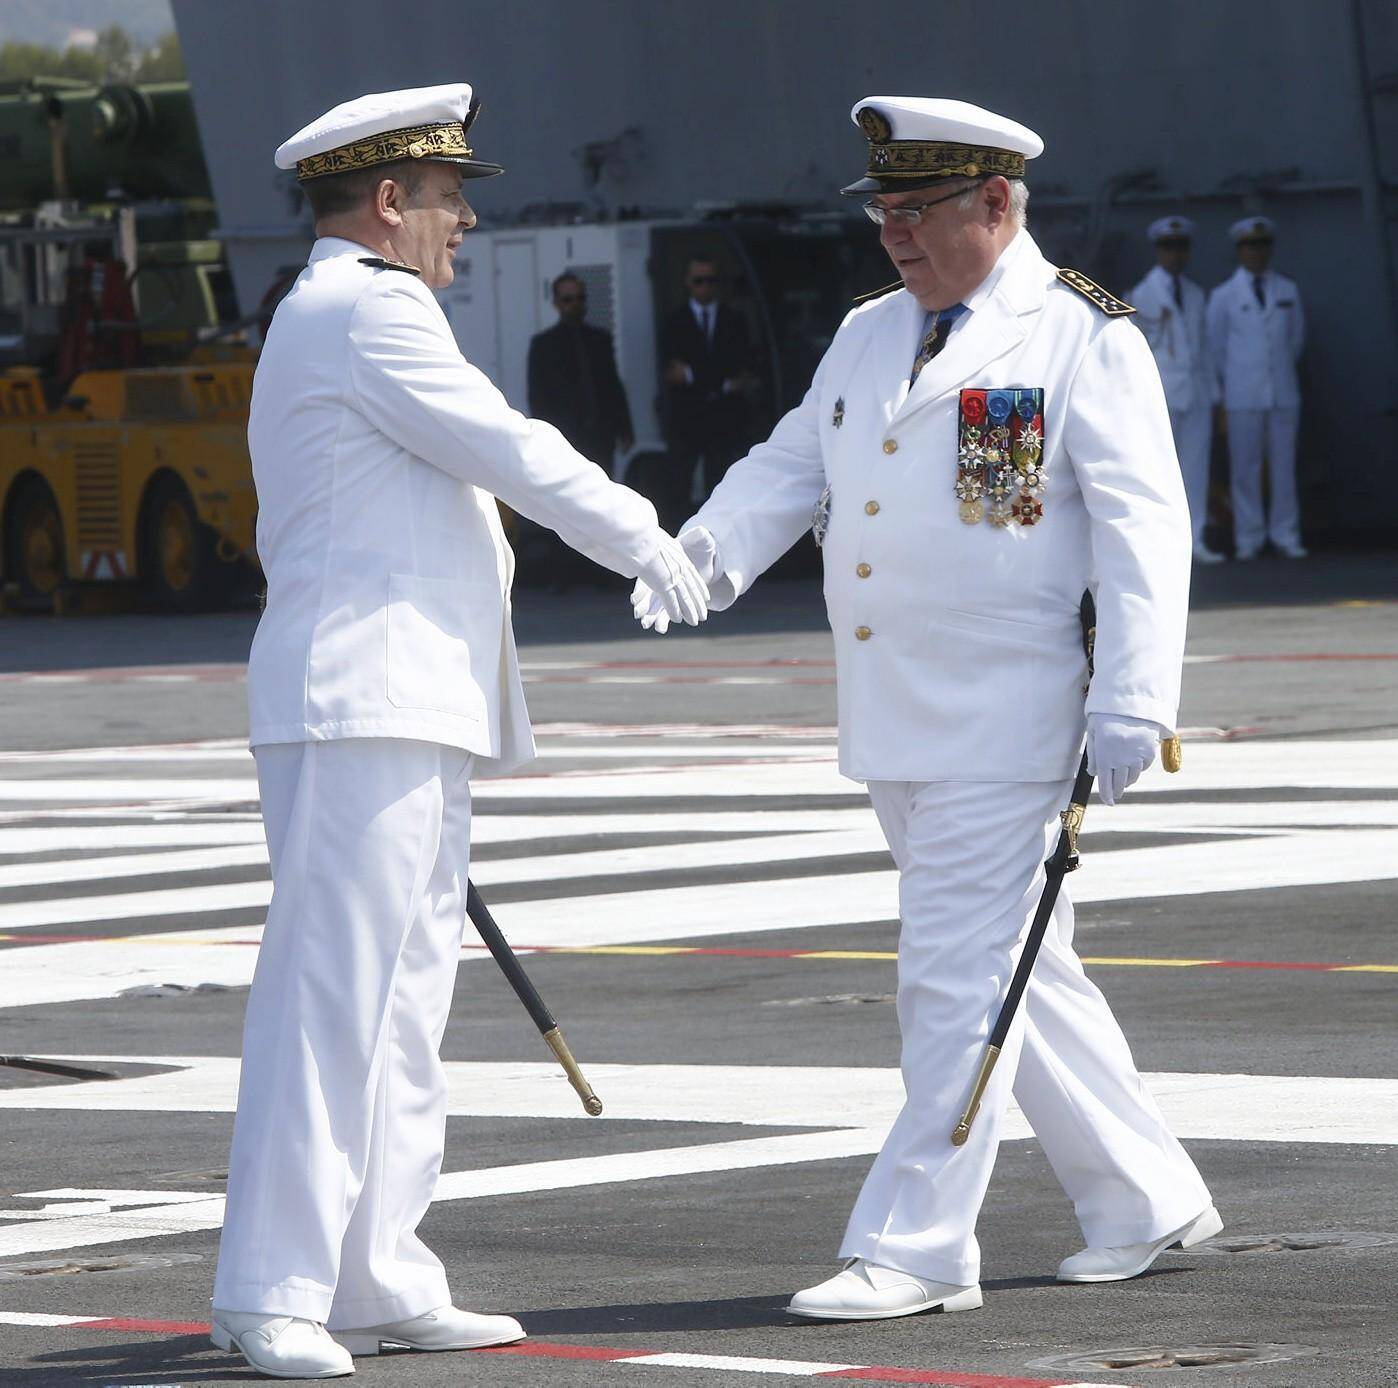 L’amiral Prazuck (à gauche) prend la relève. L’amiral Rogel (à droite) rejoint le président de la République.